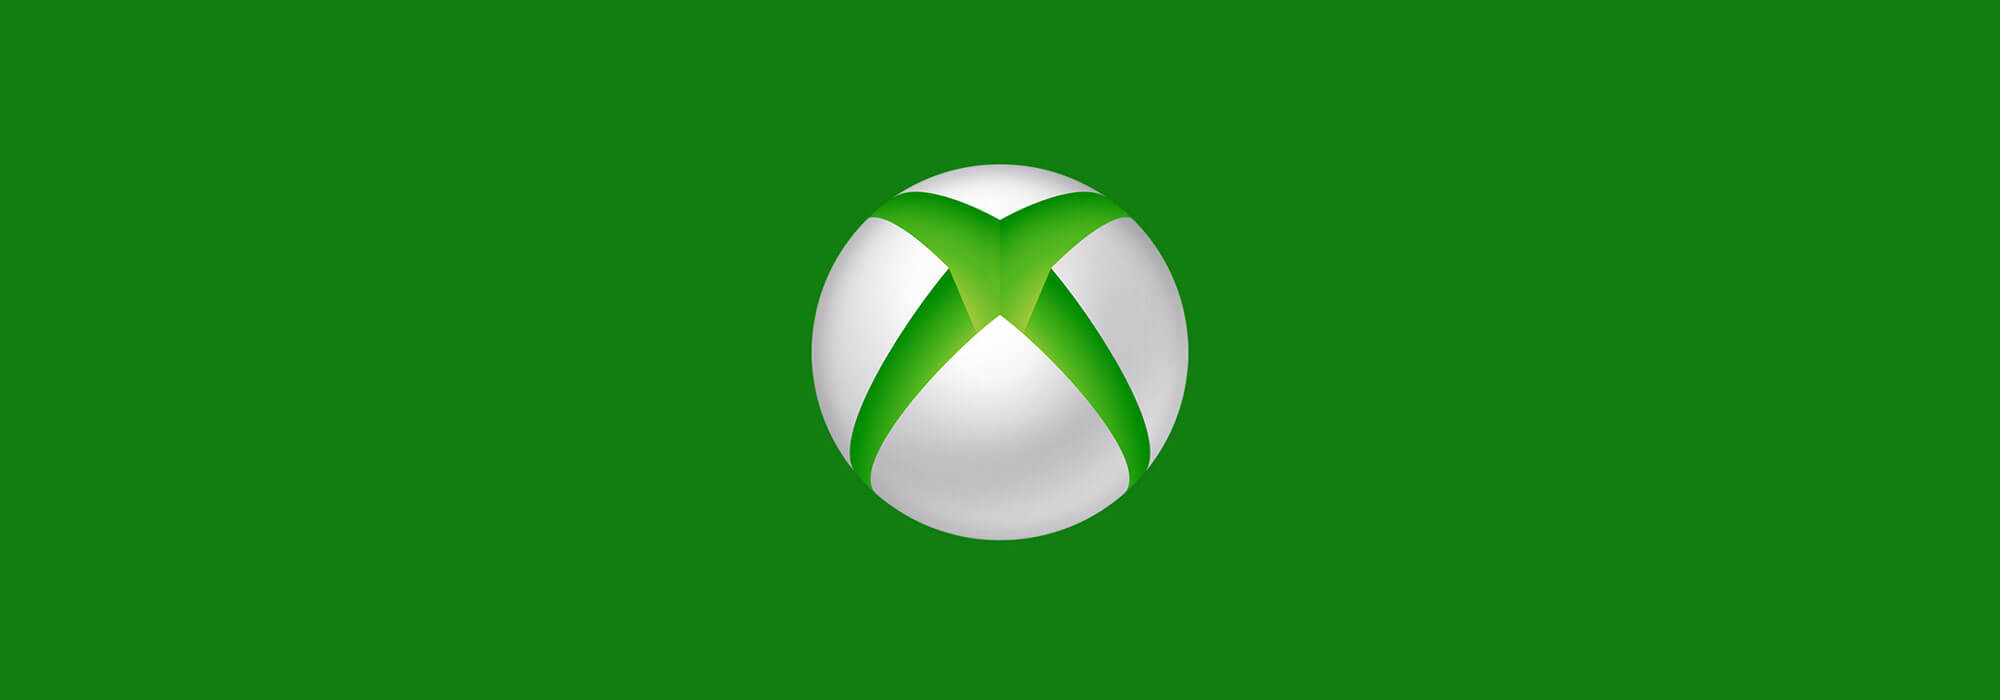 Значок Xbox